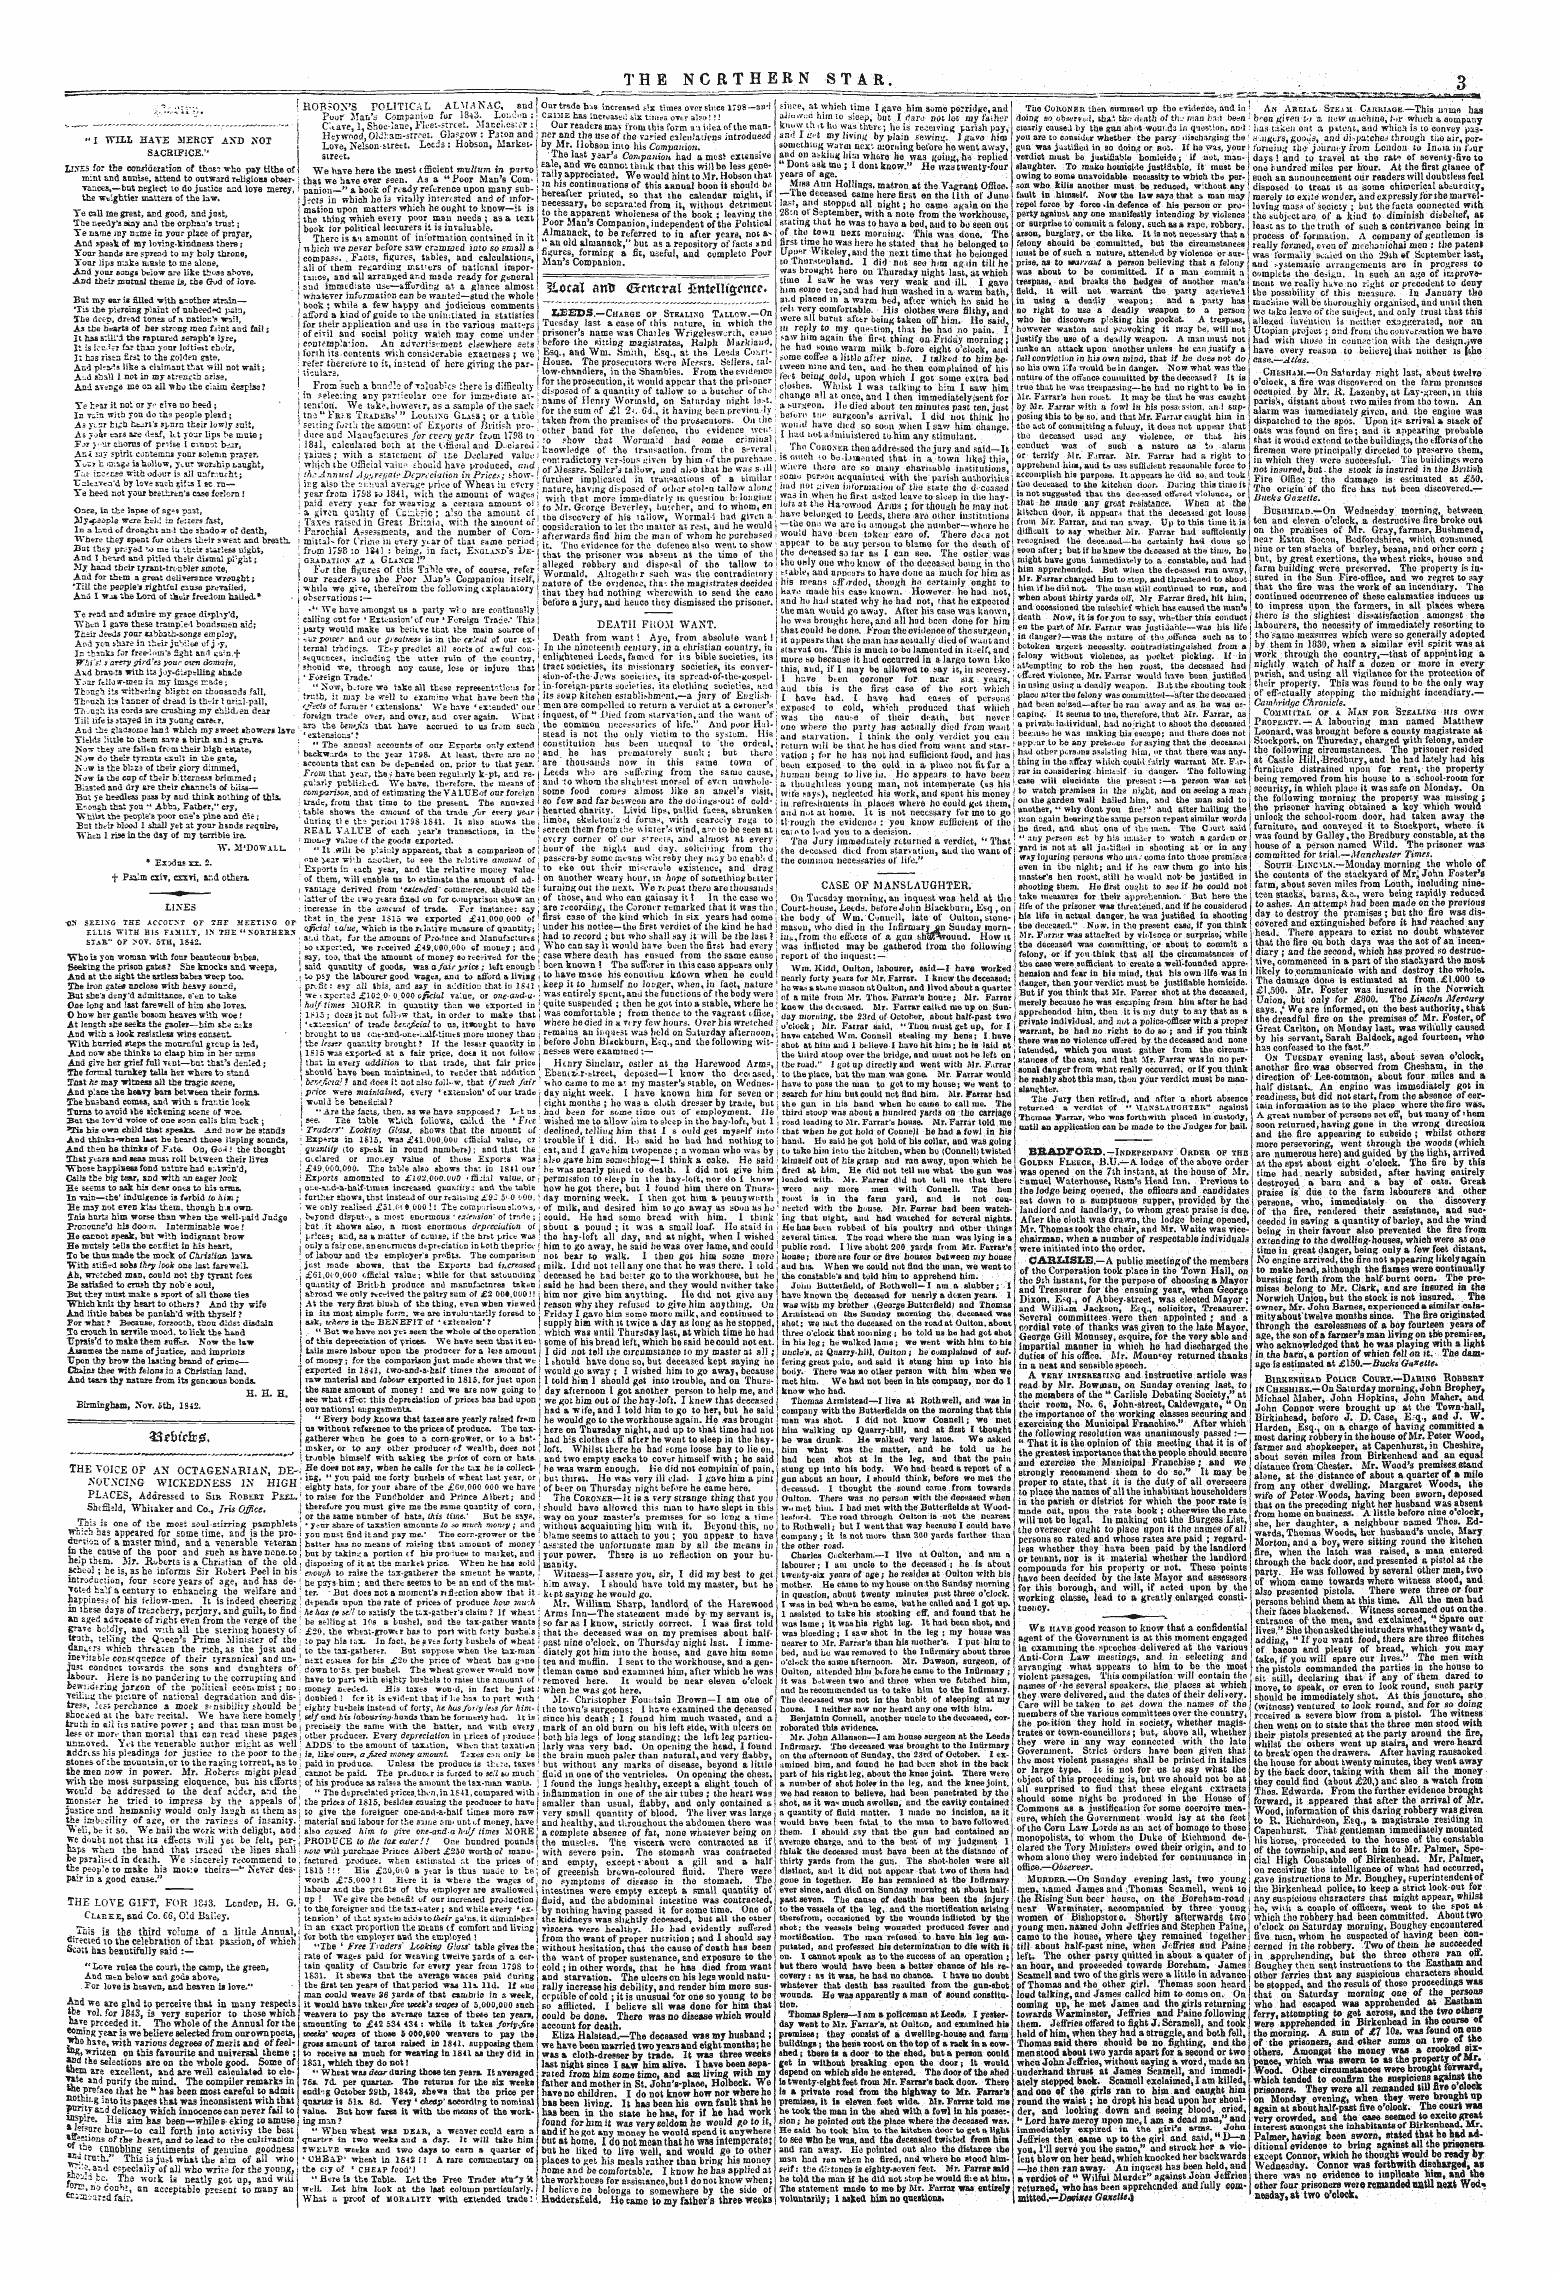 Northern Star (1837-1852): jS F Y, 1st edition - 3£,Ocal Antr (Brrnrral Sntellt' Scncr*